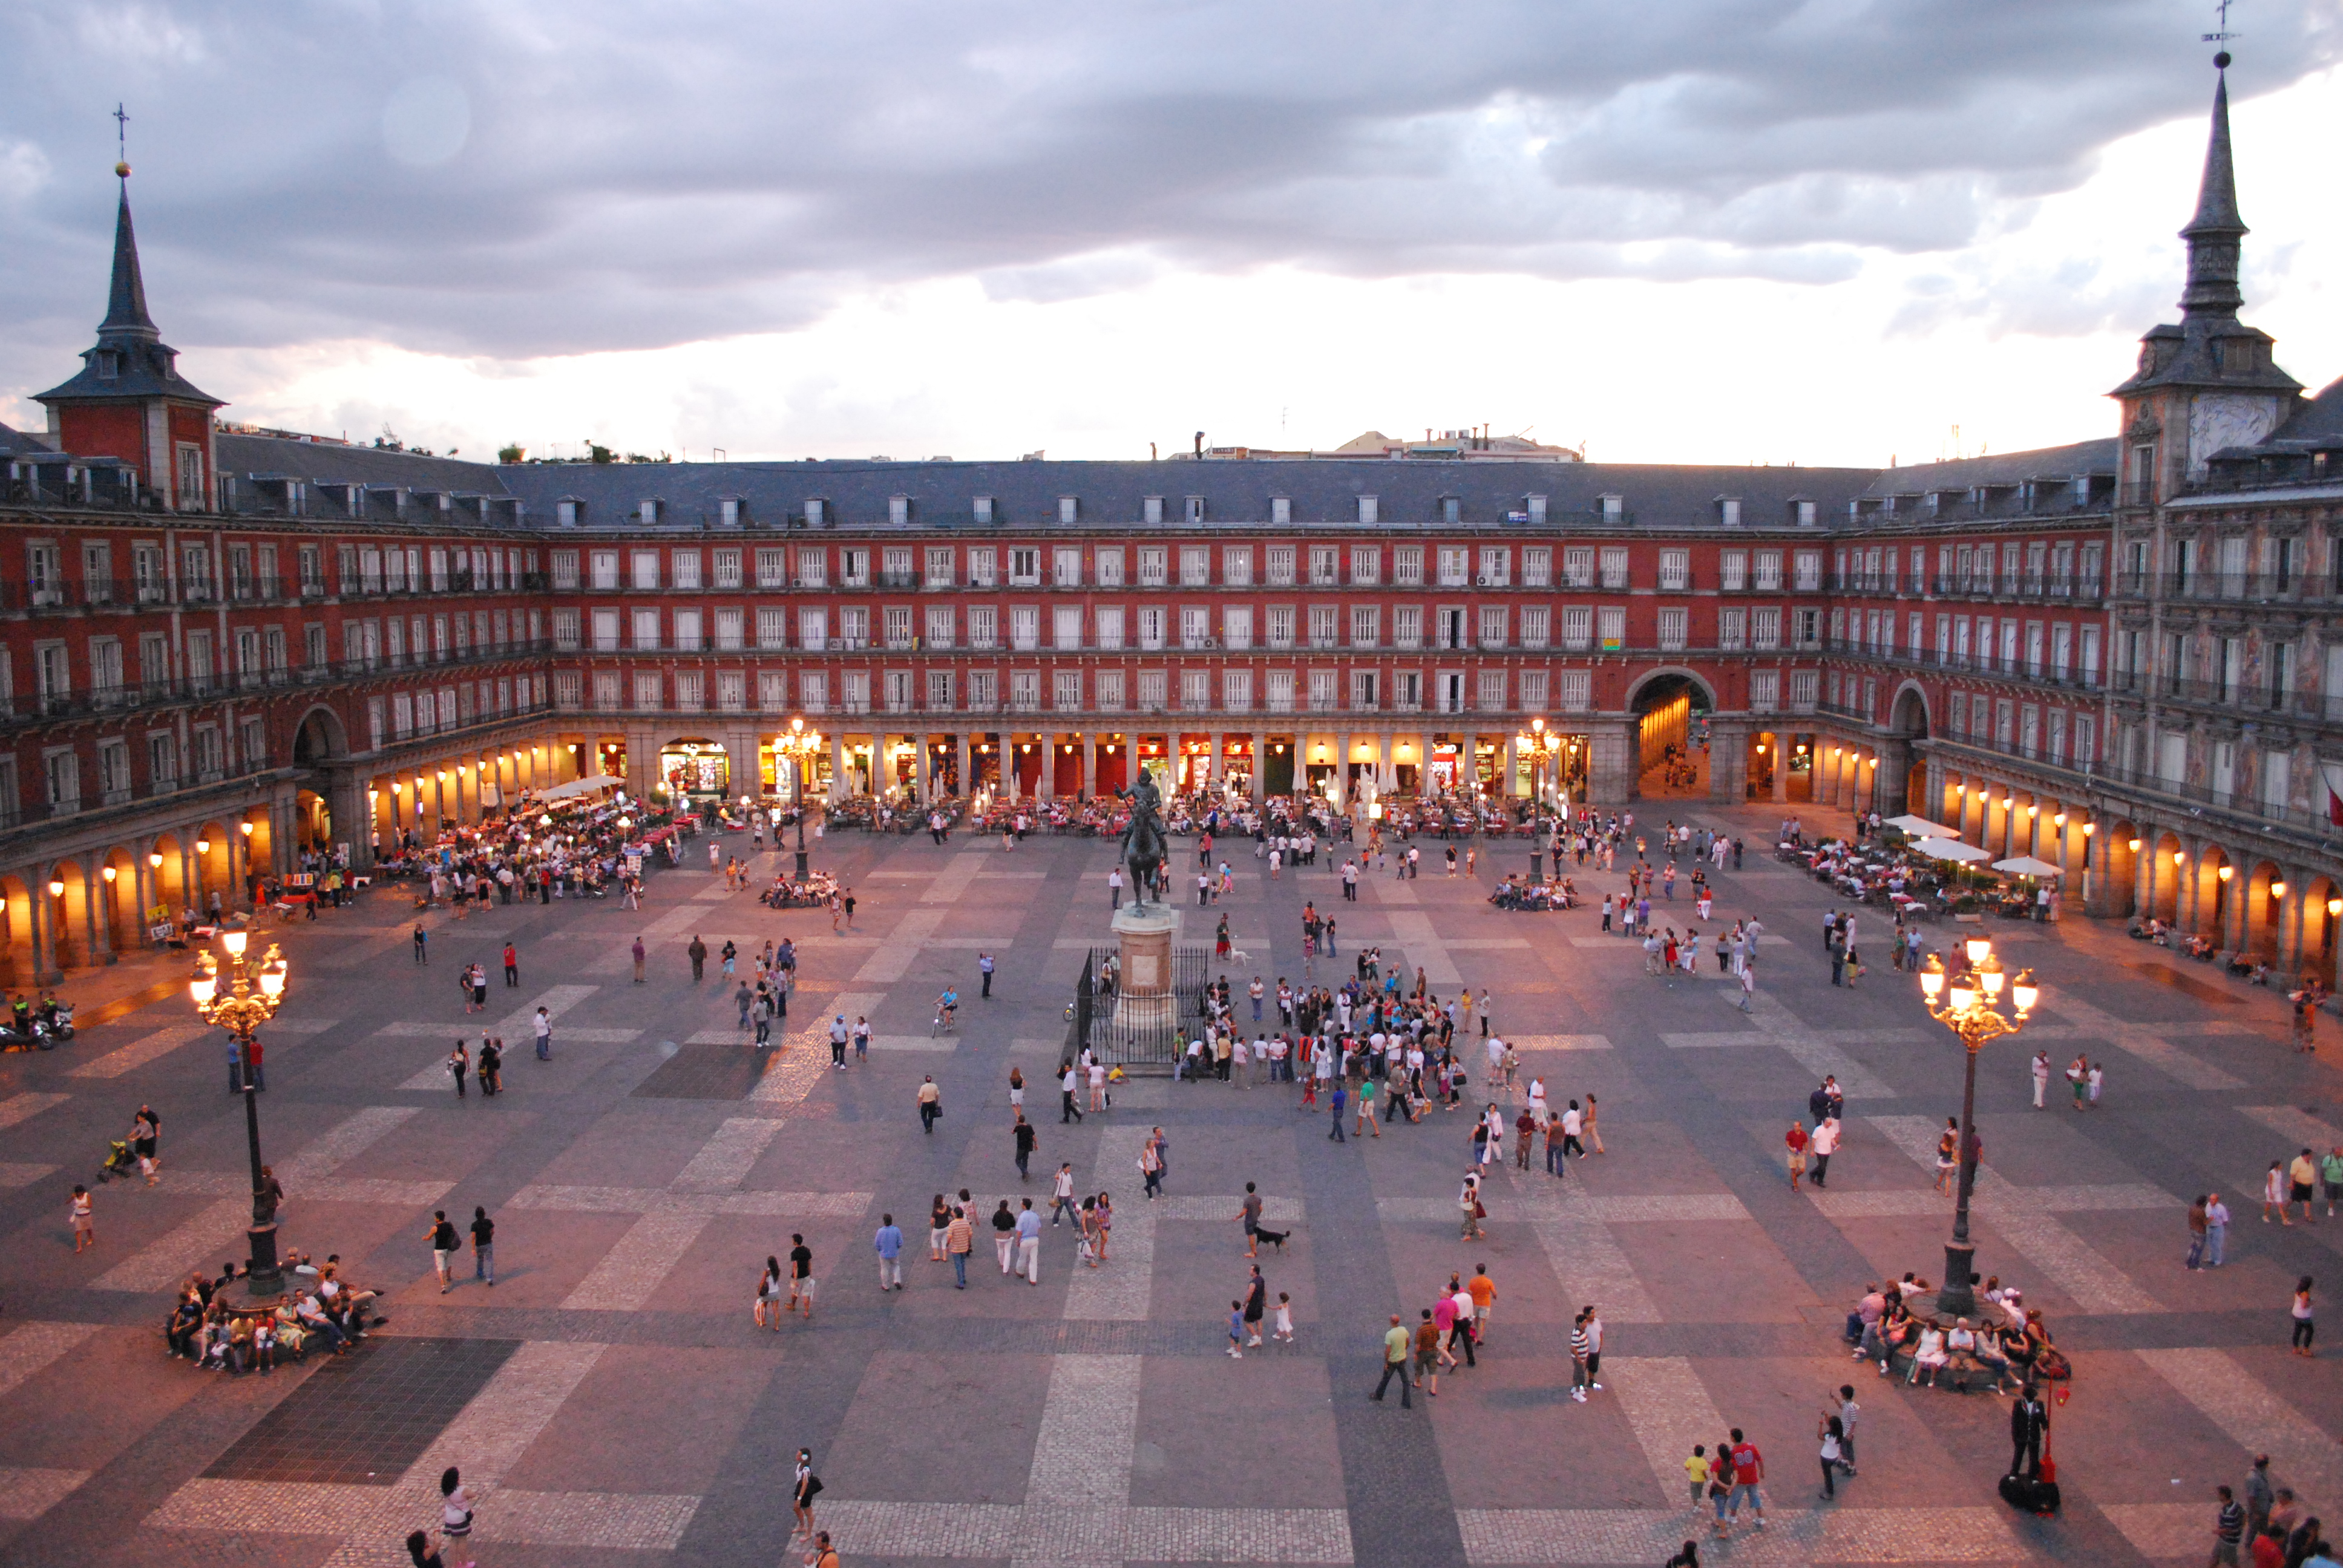 Plaza Mayor - Главная площадь, расположена в так называемом - "австрийском Мадриде".